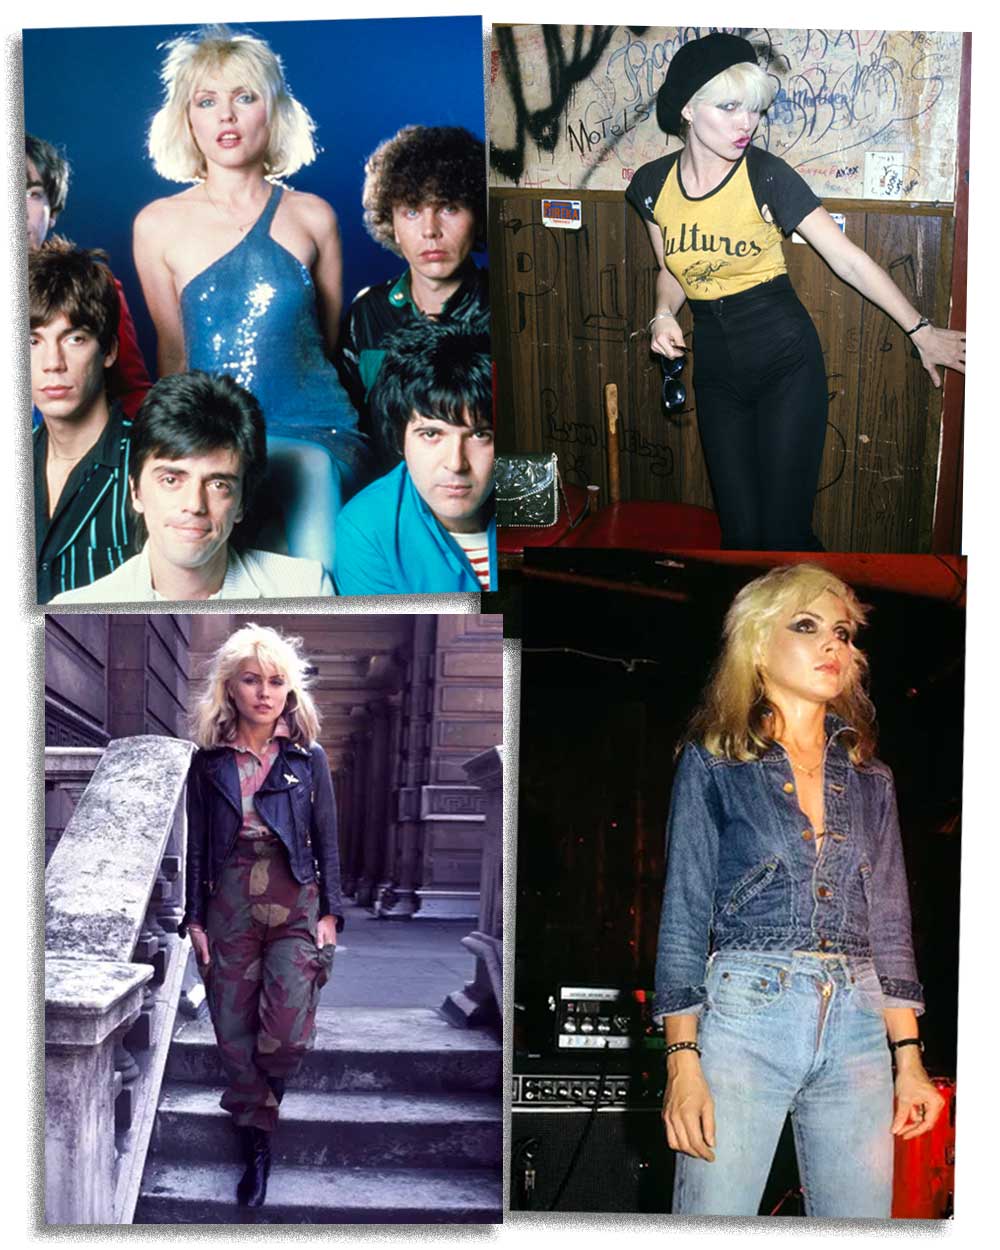 Debbie Harry of Blondie 80s New Wave Punk fashion